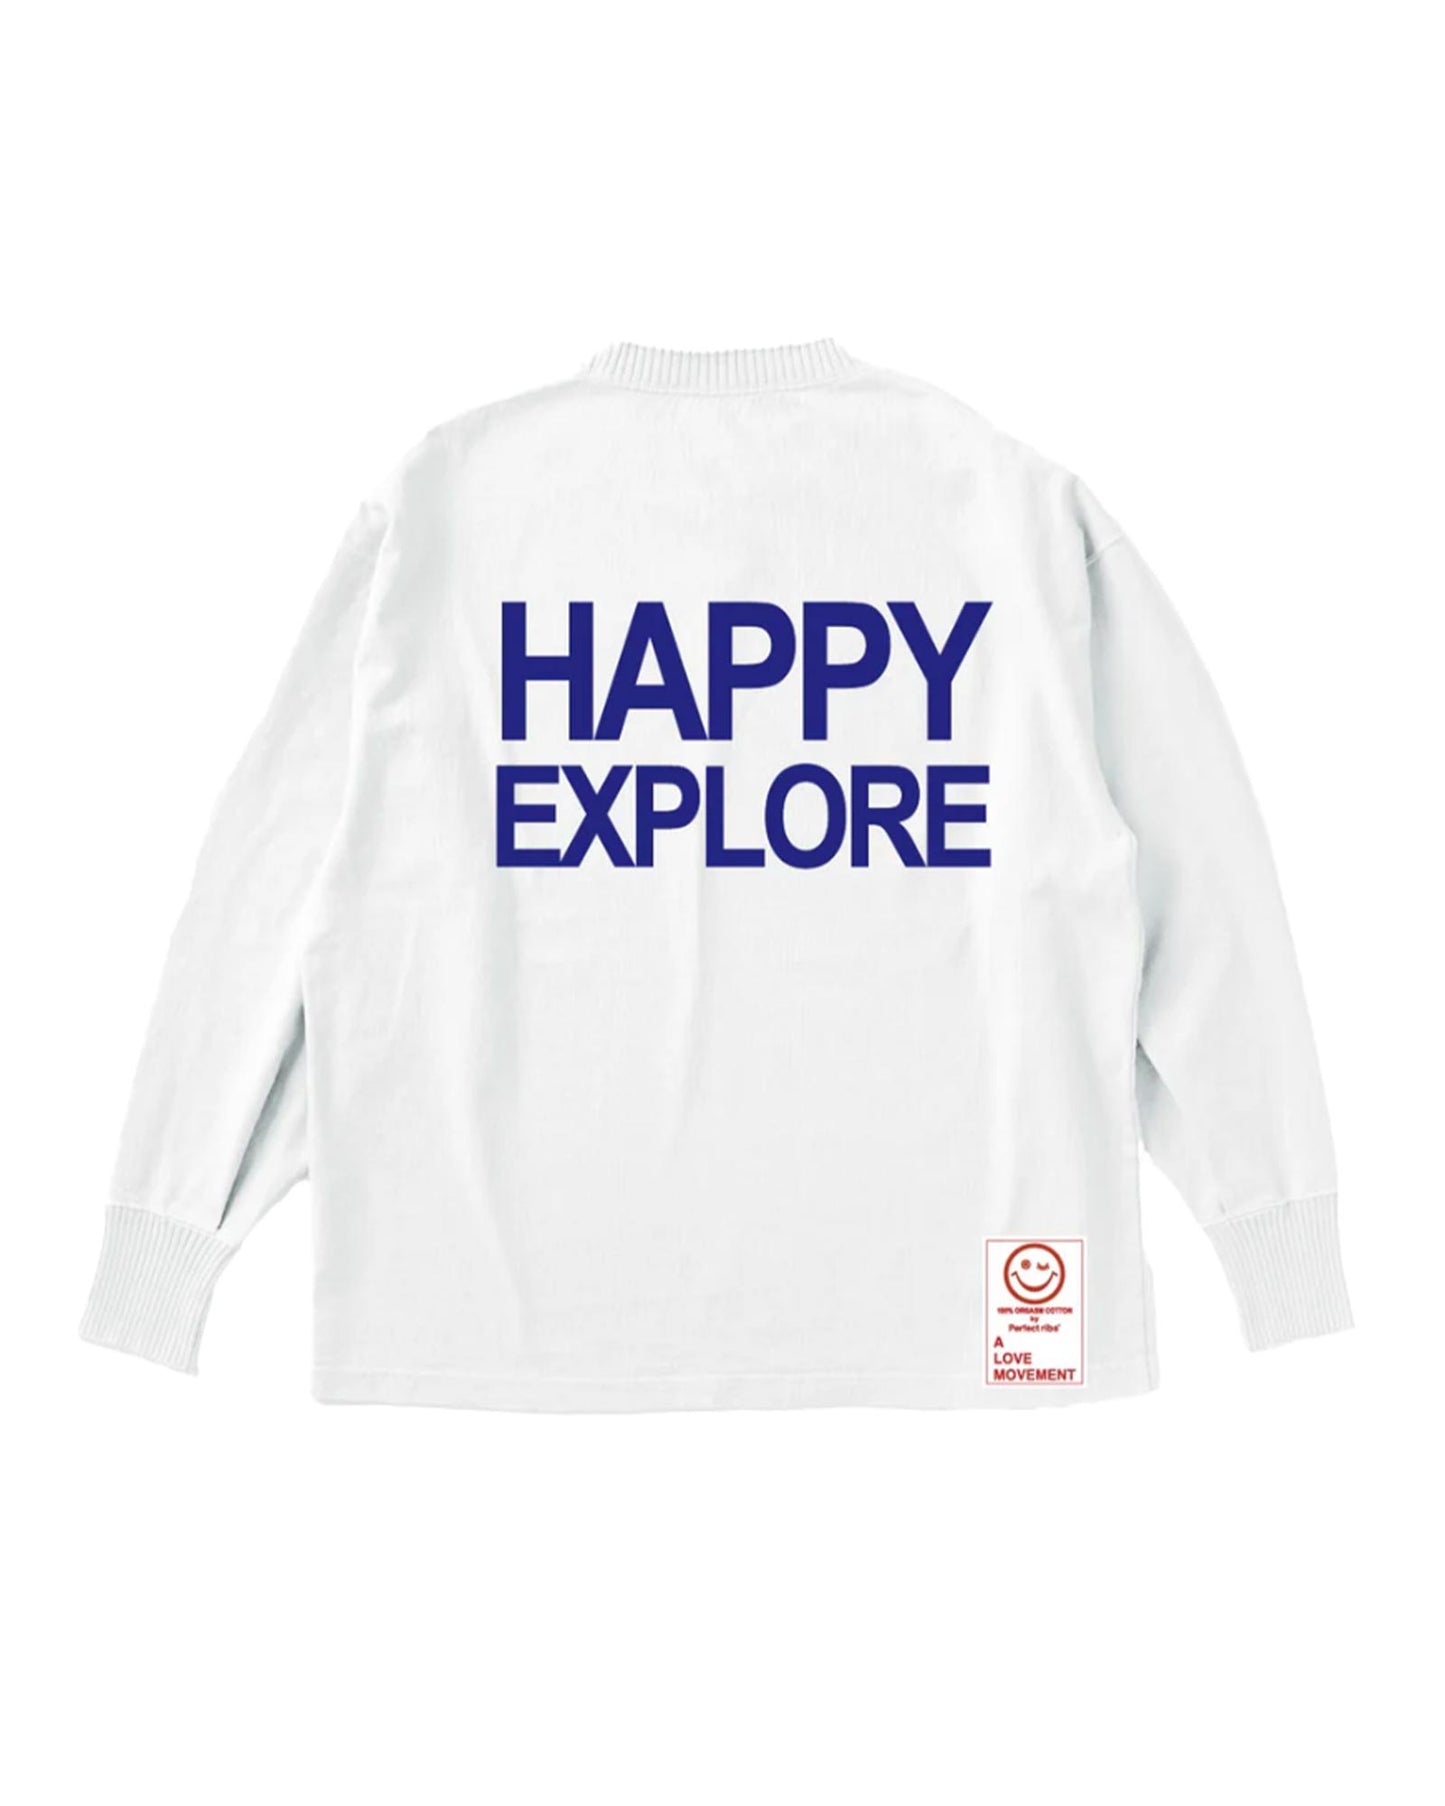 パーフェクトリブス/(ADIOS SENORITA & HAPPY EXPLORE) Side Slit Long Sleeve T Shirts/ロンT/White